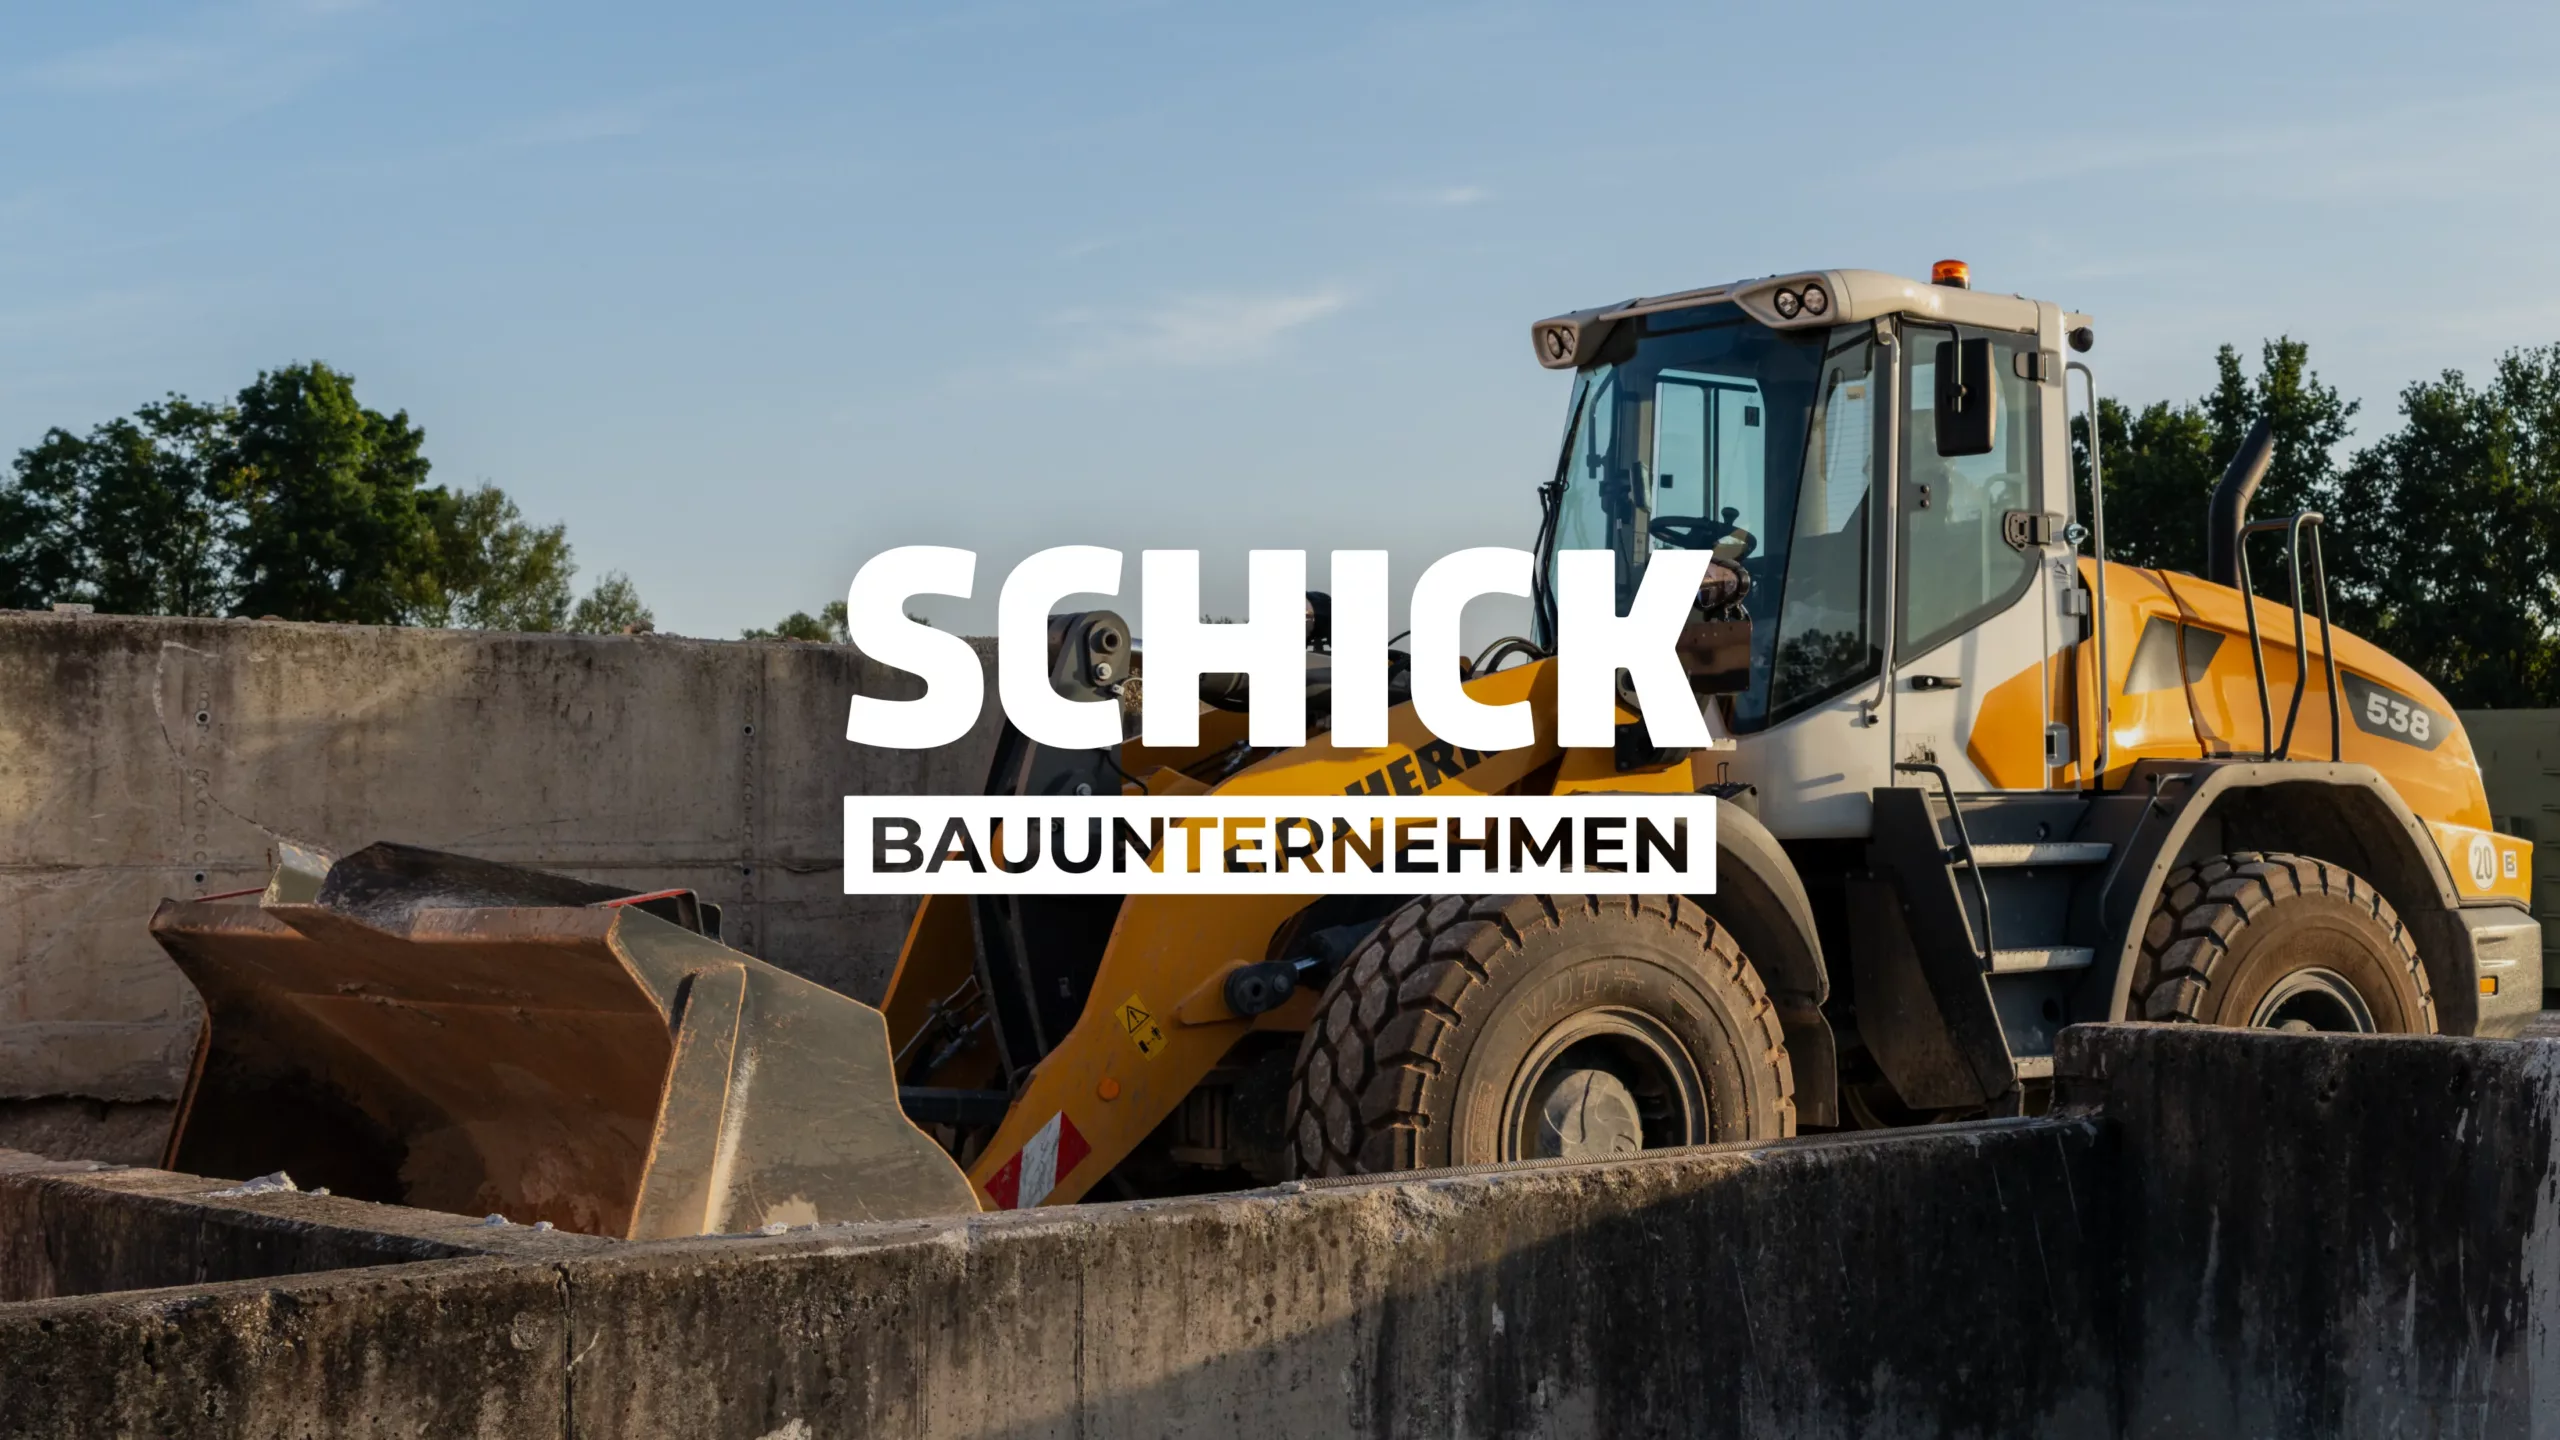 SCHICK Bauunternehmen - Lader auf Bauhof